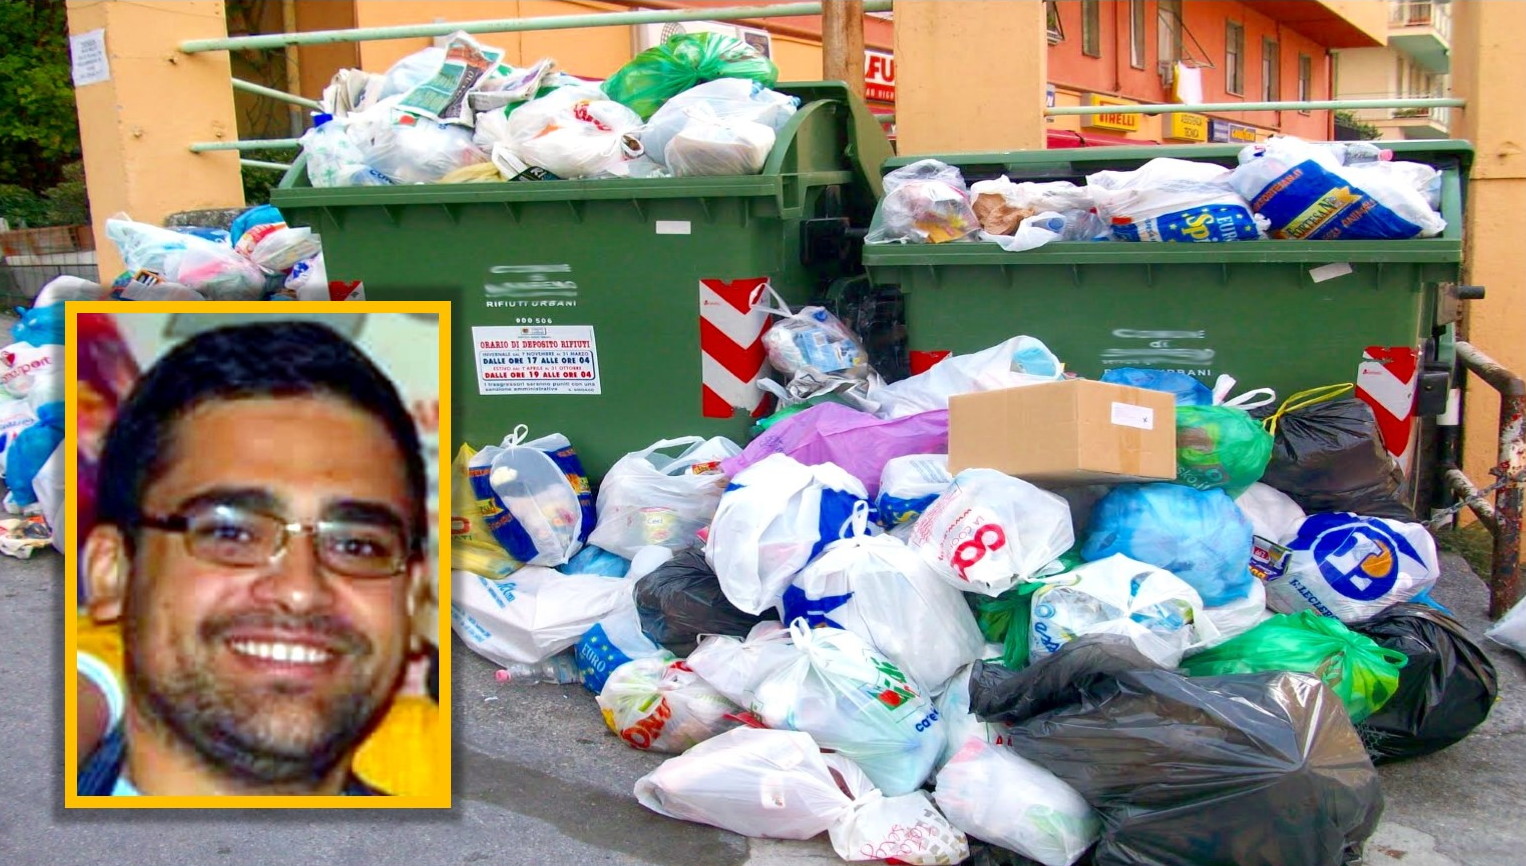 Emergenza rifiuti: il sindaco di Malvagna “sfida” l’Ato Messina 4